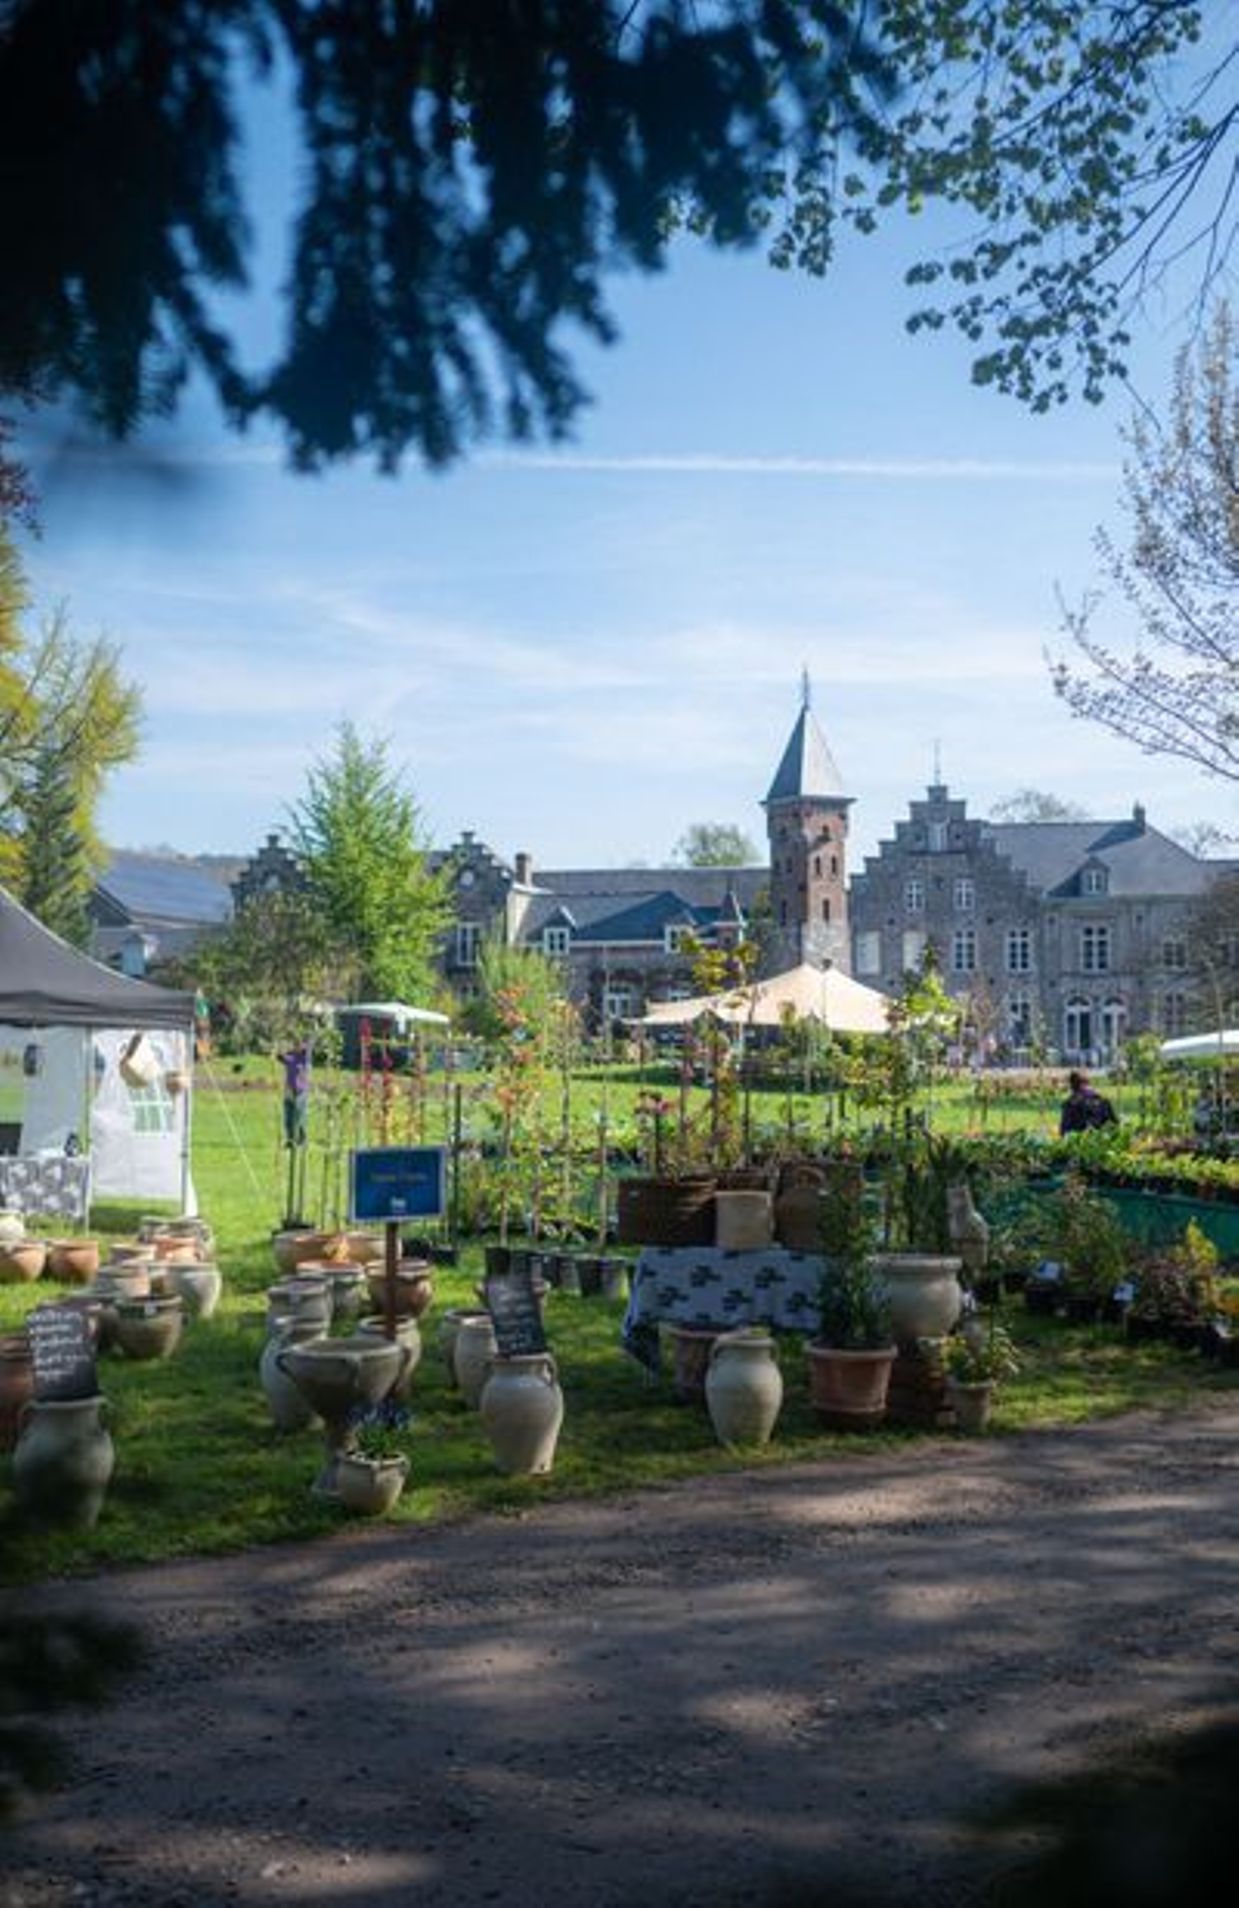 Festival du jardin, samedi 27 et dimanche 28 avril, de 10 à 18 h, château de Beez (Namur). Entrée : 7 €, gratuit pour les moins de 12 ans.